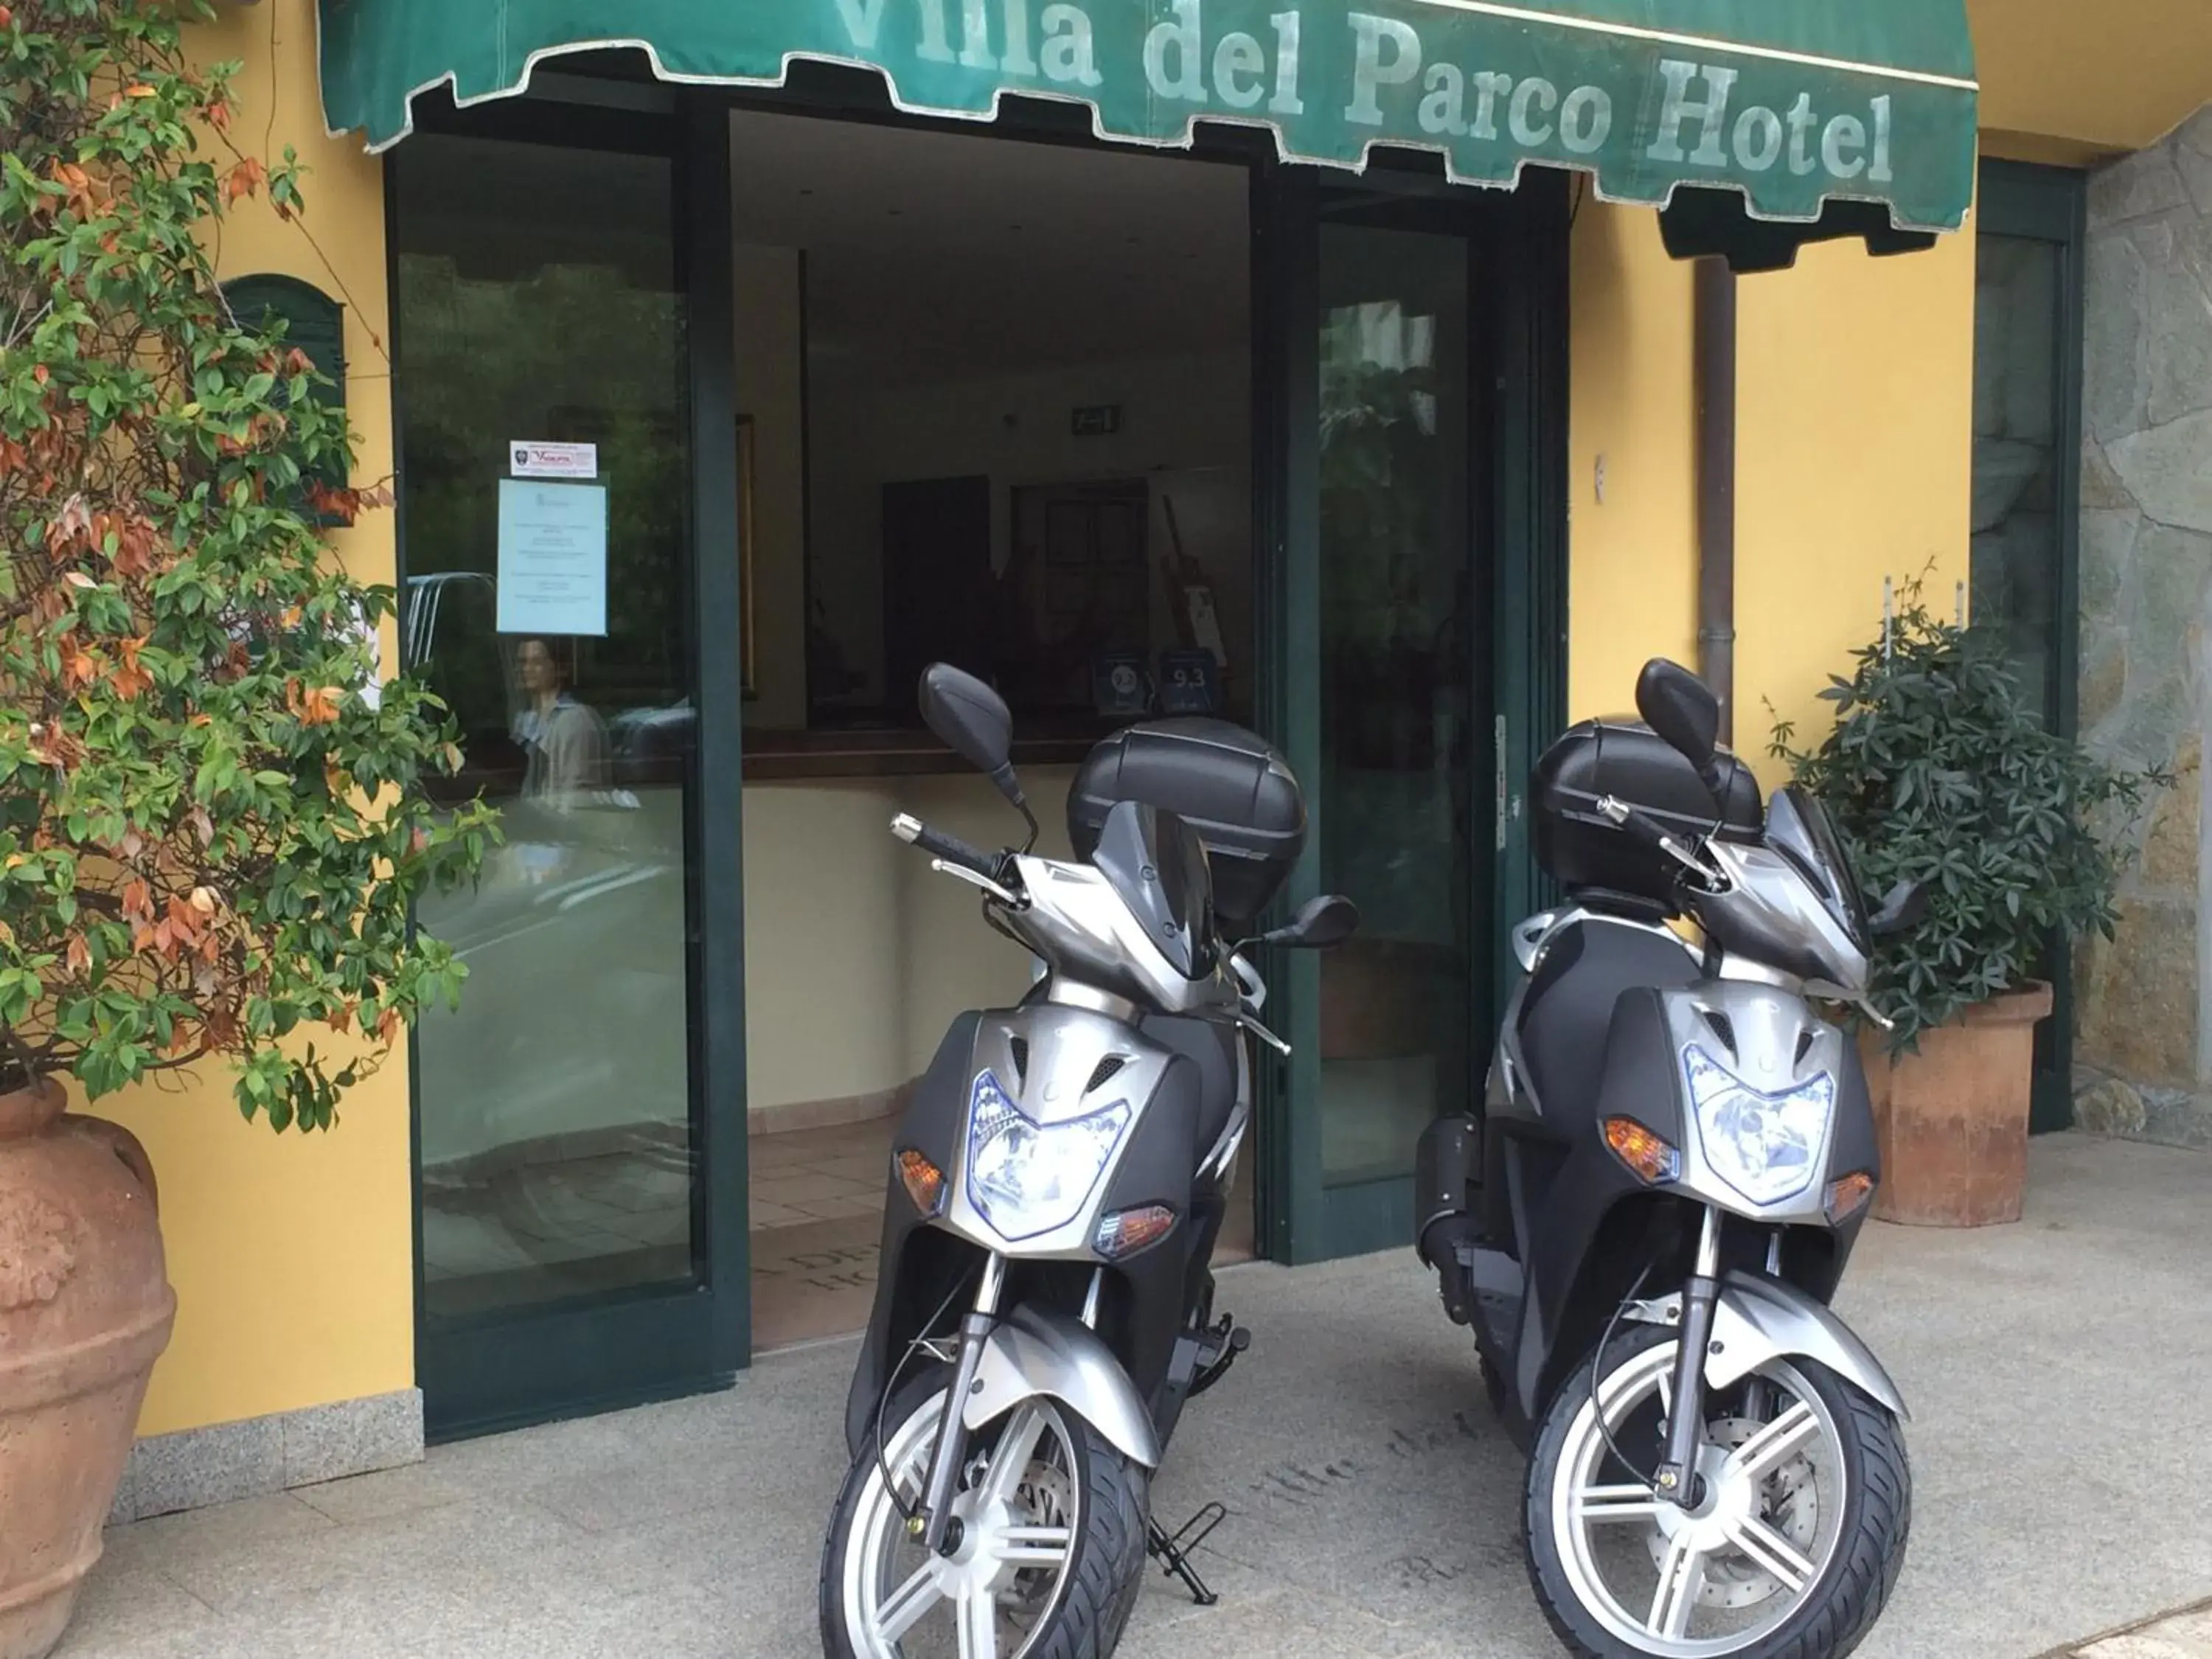 Area and facilities in Hotel Villa Del Parco